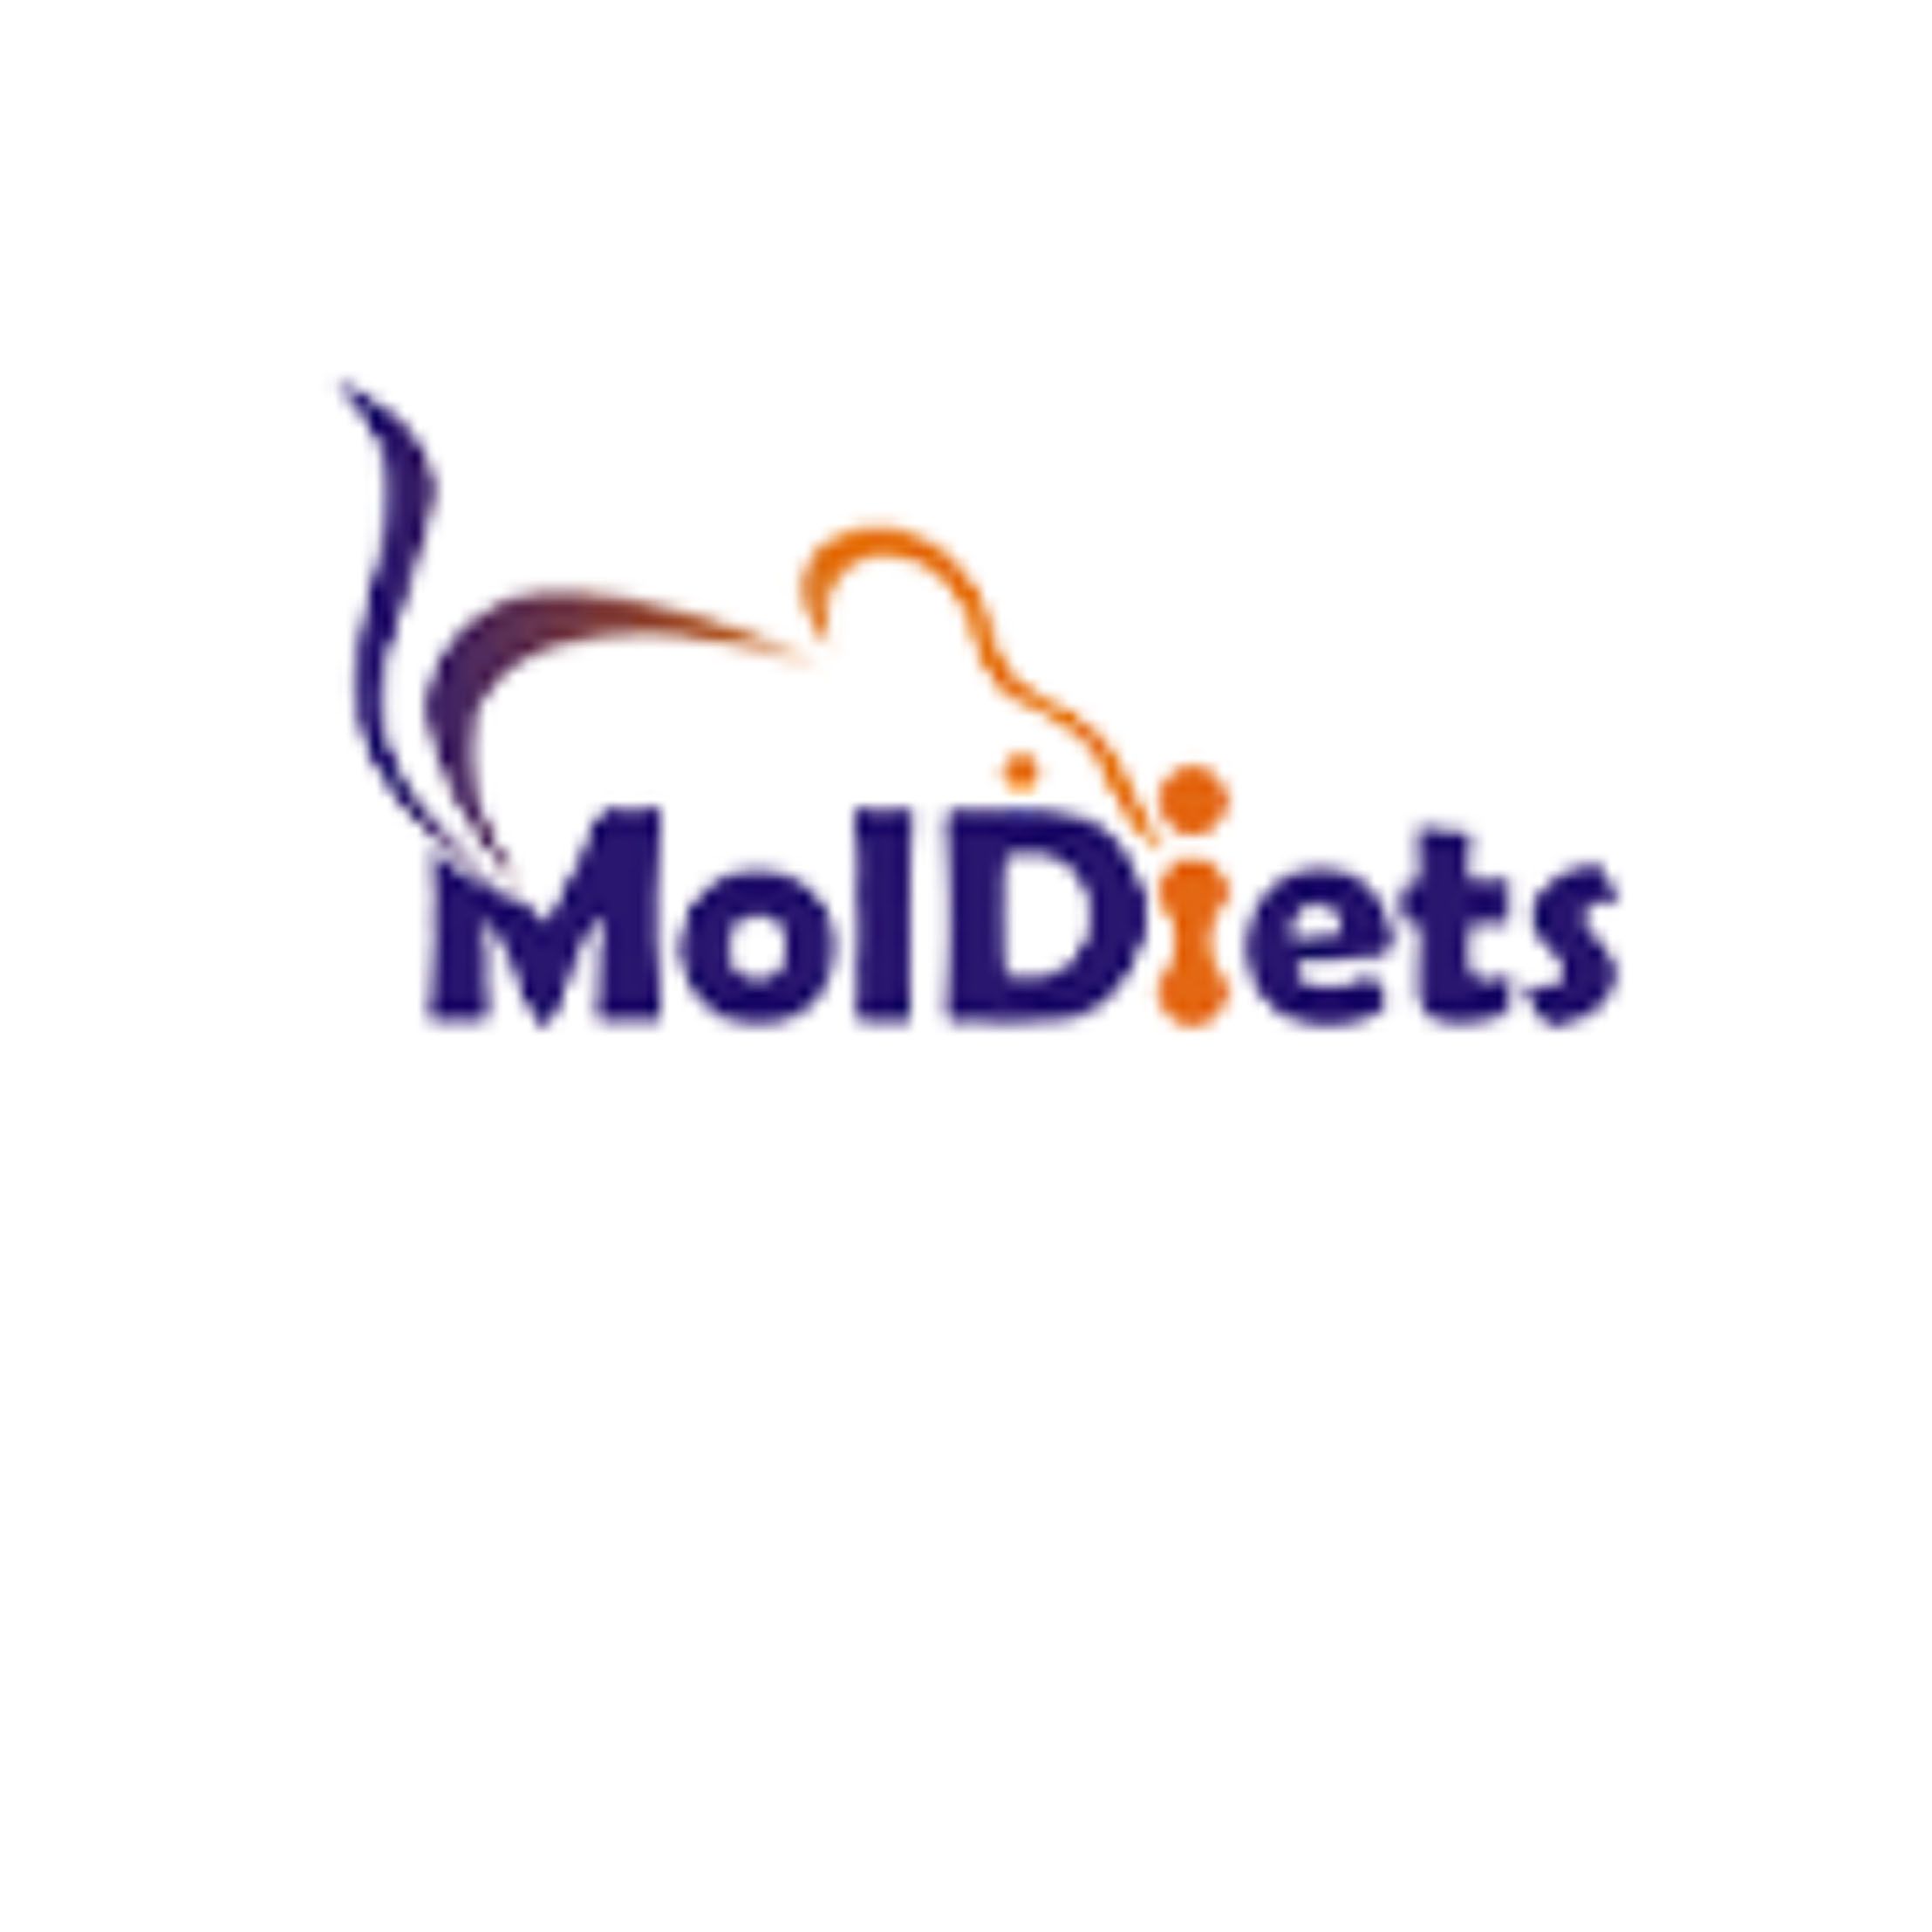 MolDiets 西方饮食饲料，高胆固醇饲料，MCD饲料，CD饲料，生酮饲料以及各种微量元素缺失饲,现货